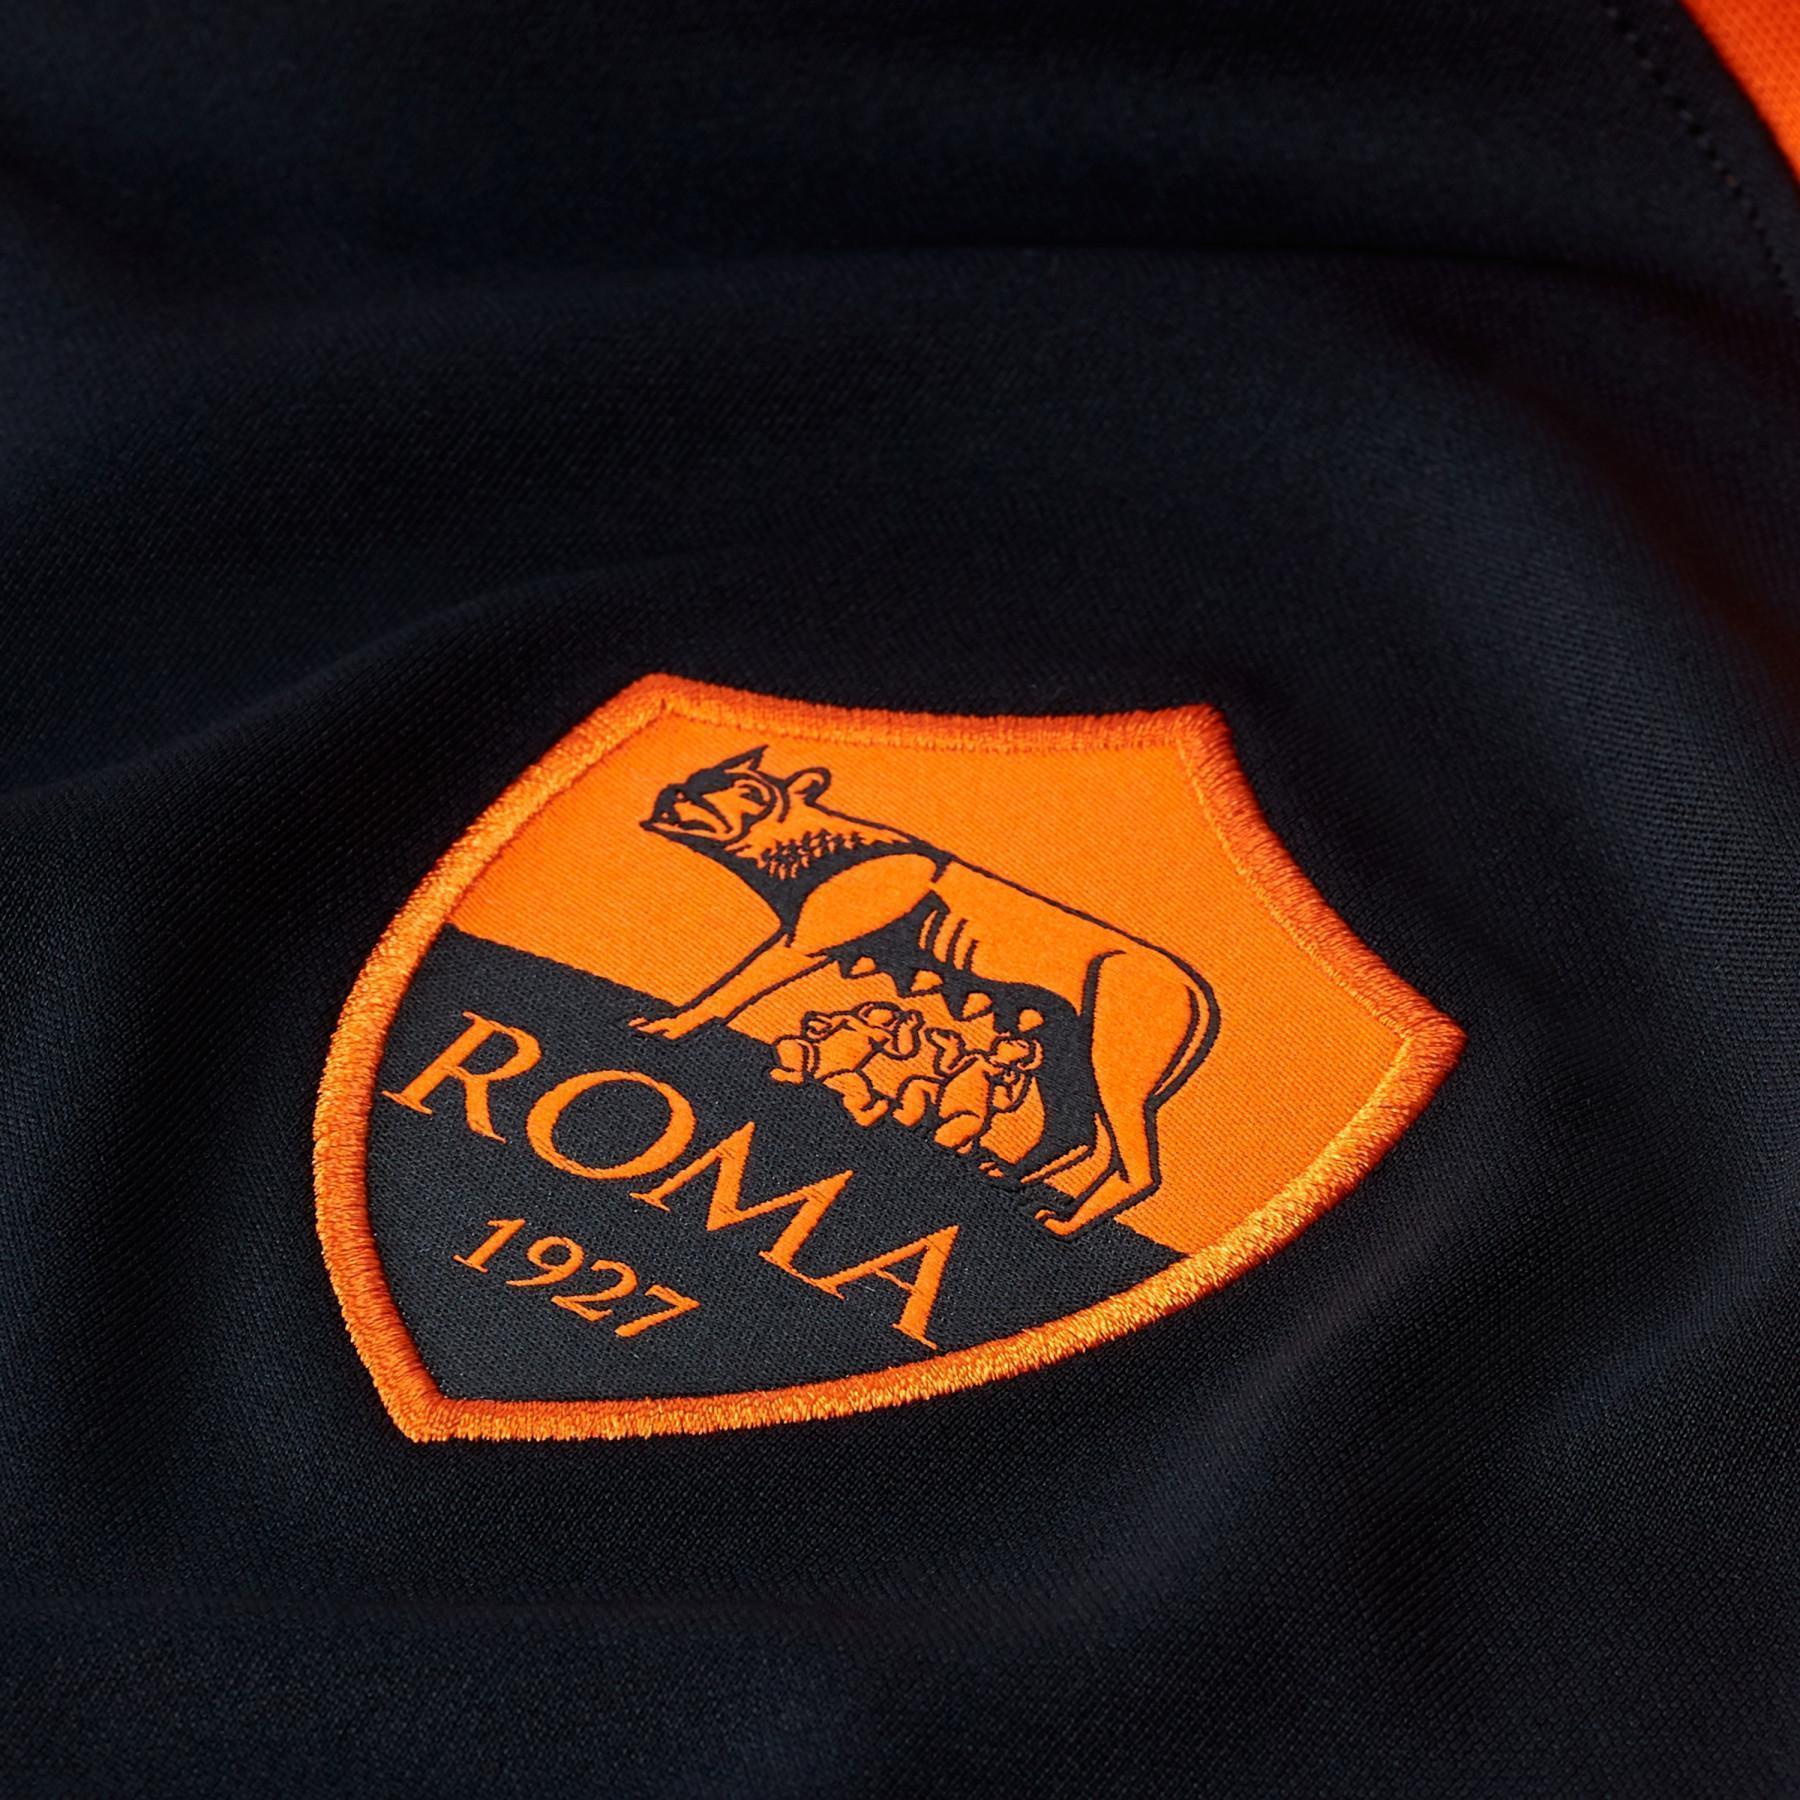 3:e tröjan AS Roma 2020/21